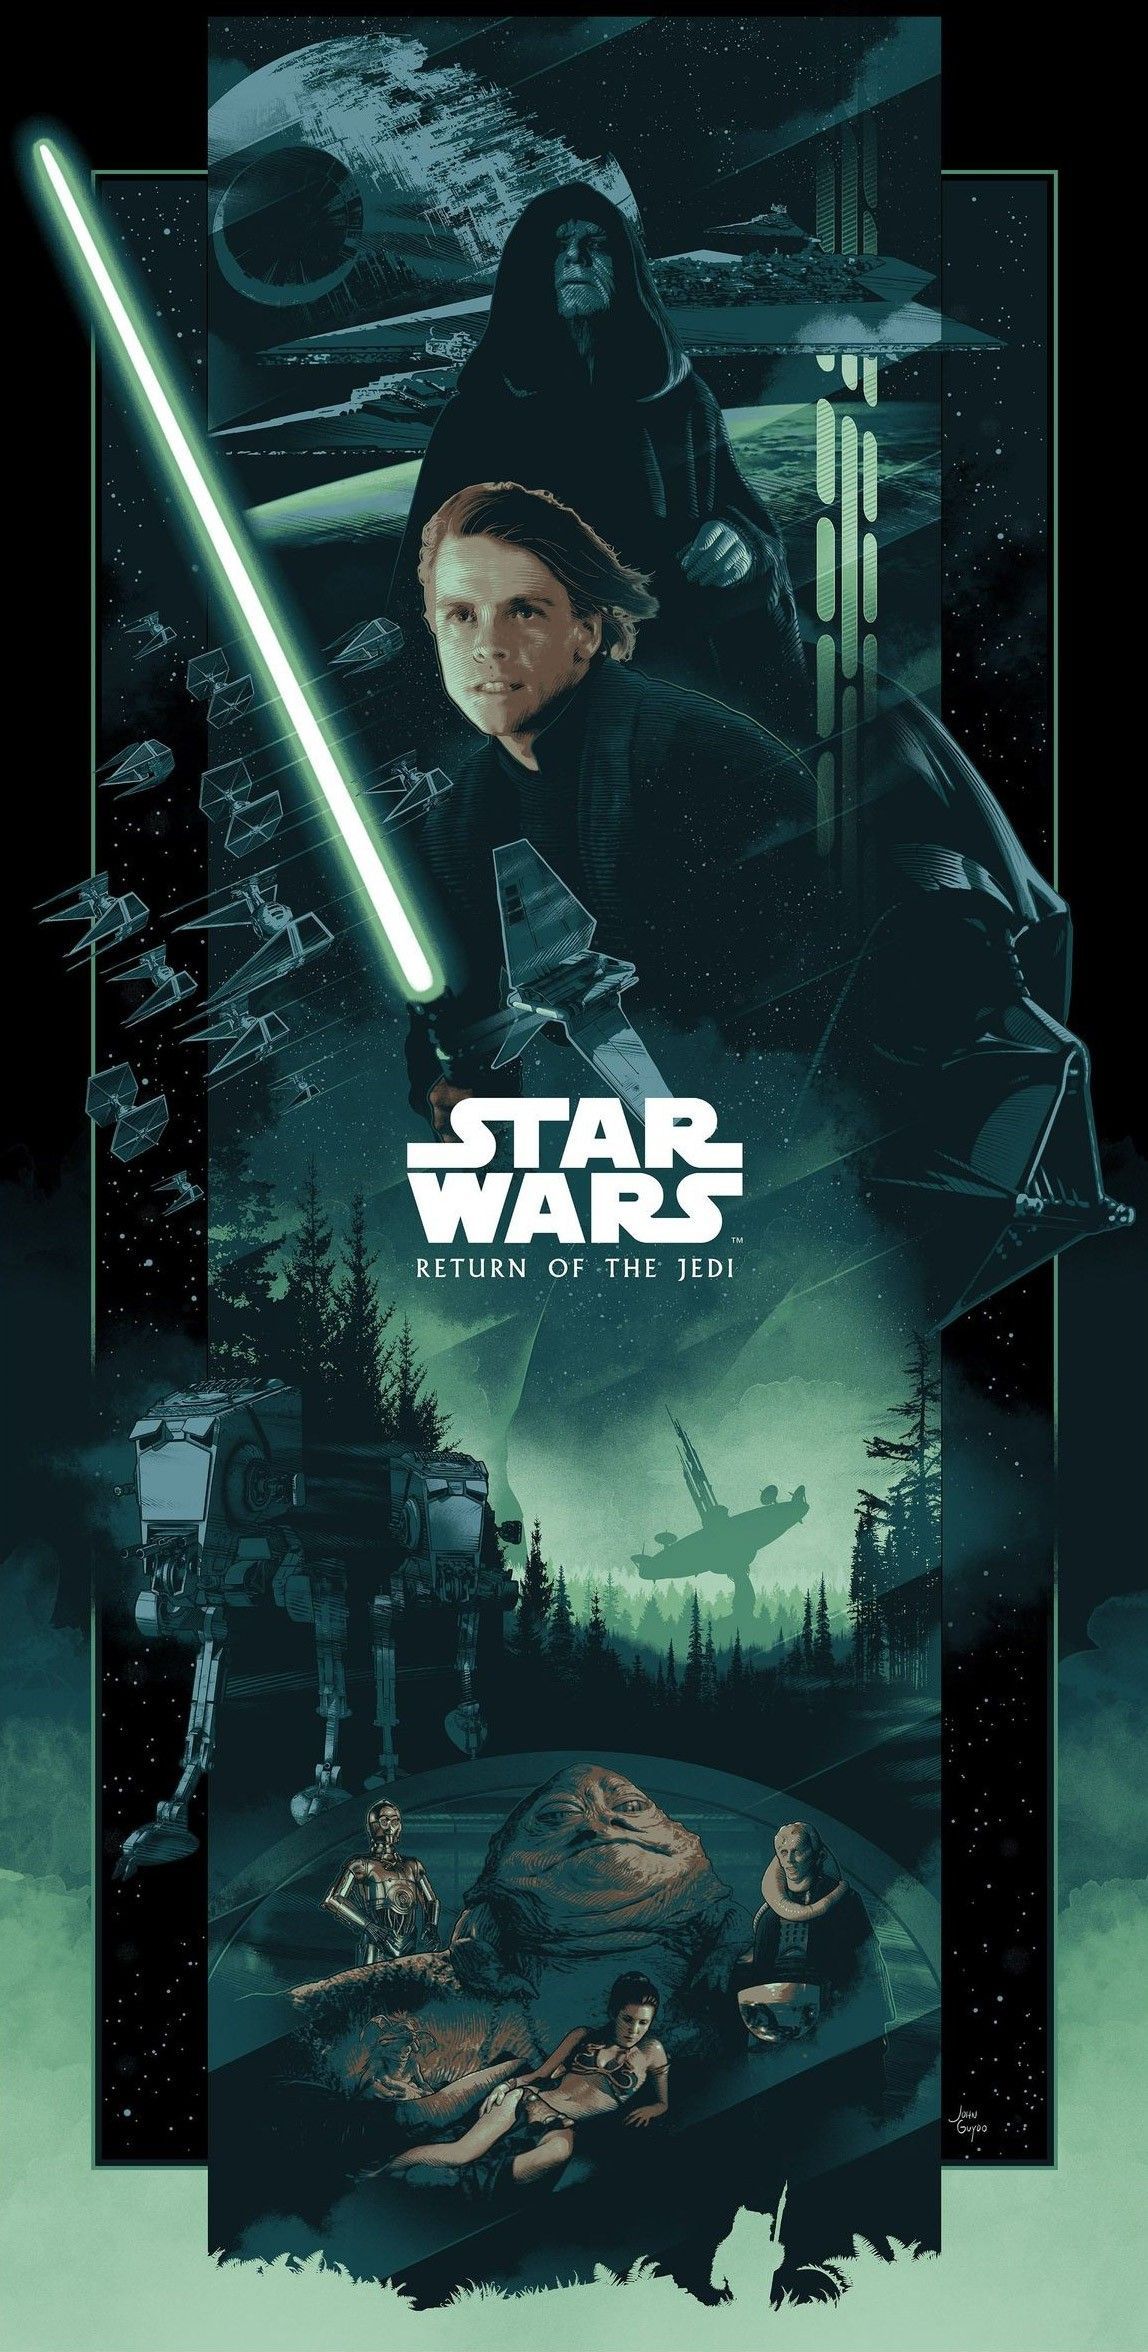 Star Wars, Return of the Jedi, Lightsaber Duel, Darth Vader, Luke Skywalker, Emperor Palpat. Star wars trilogy poster, Star wars movies posters, Star wars trilogy